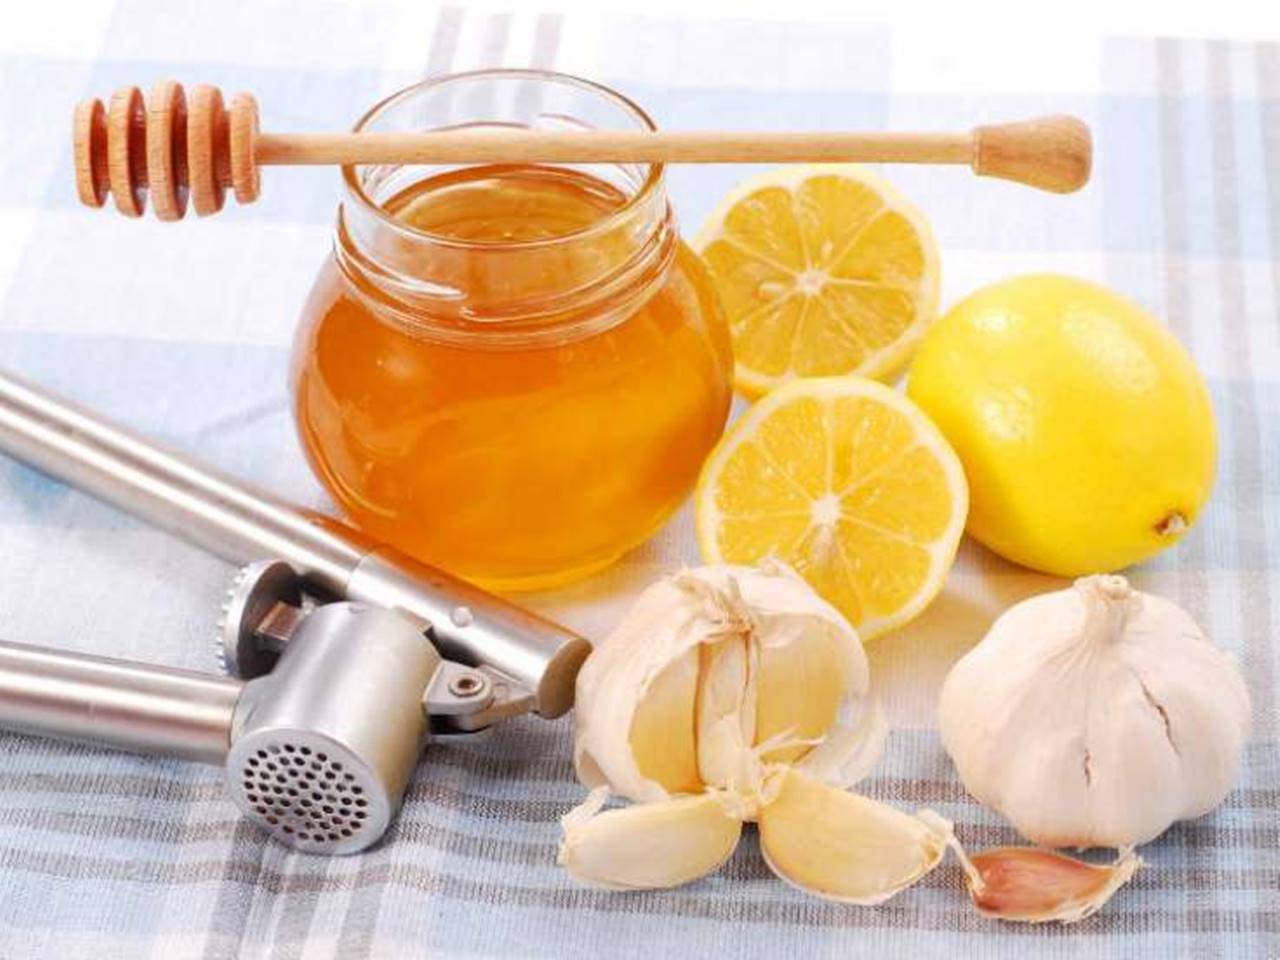 Aprenda as melhores receitas de chá de limão com mel, gengibre ou alho